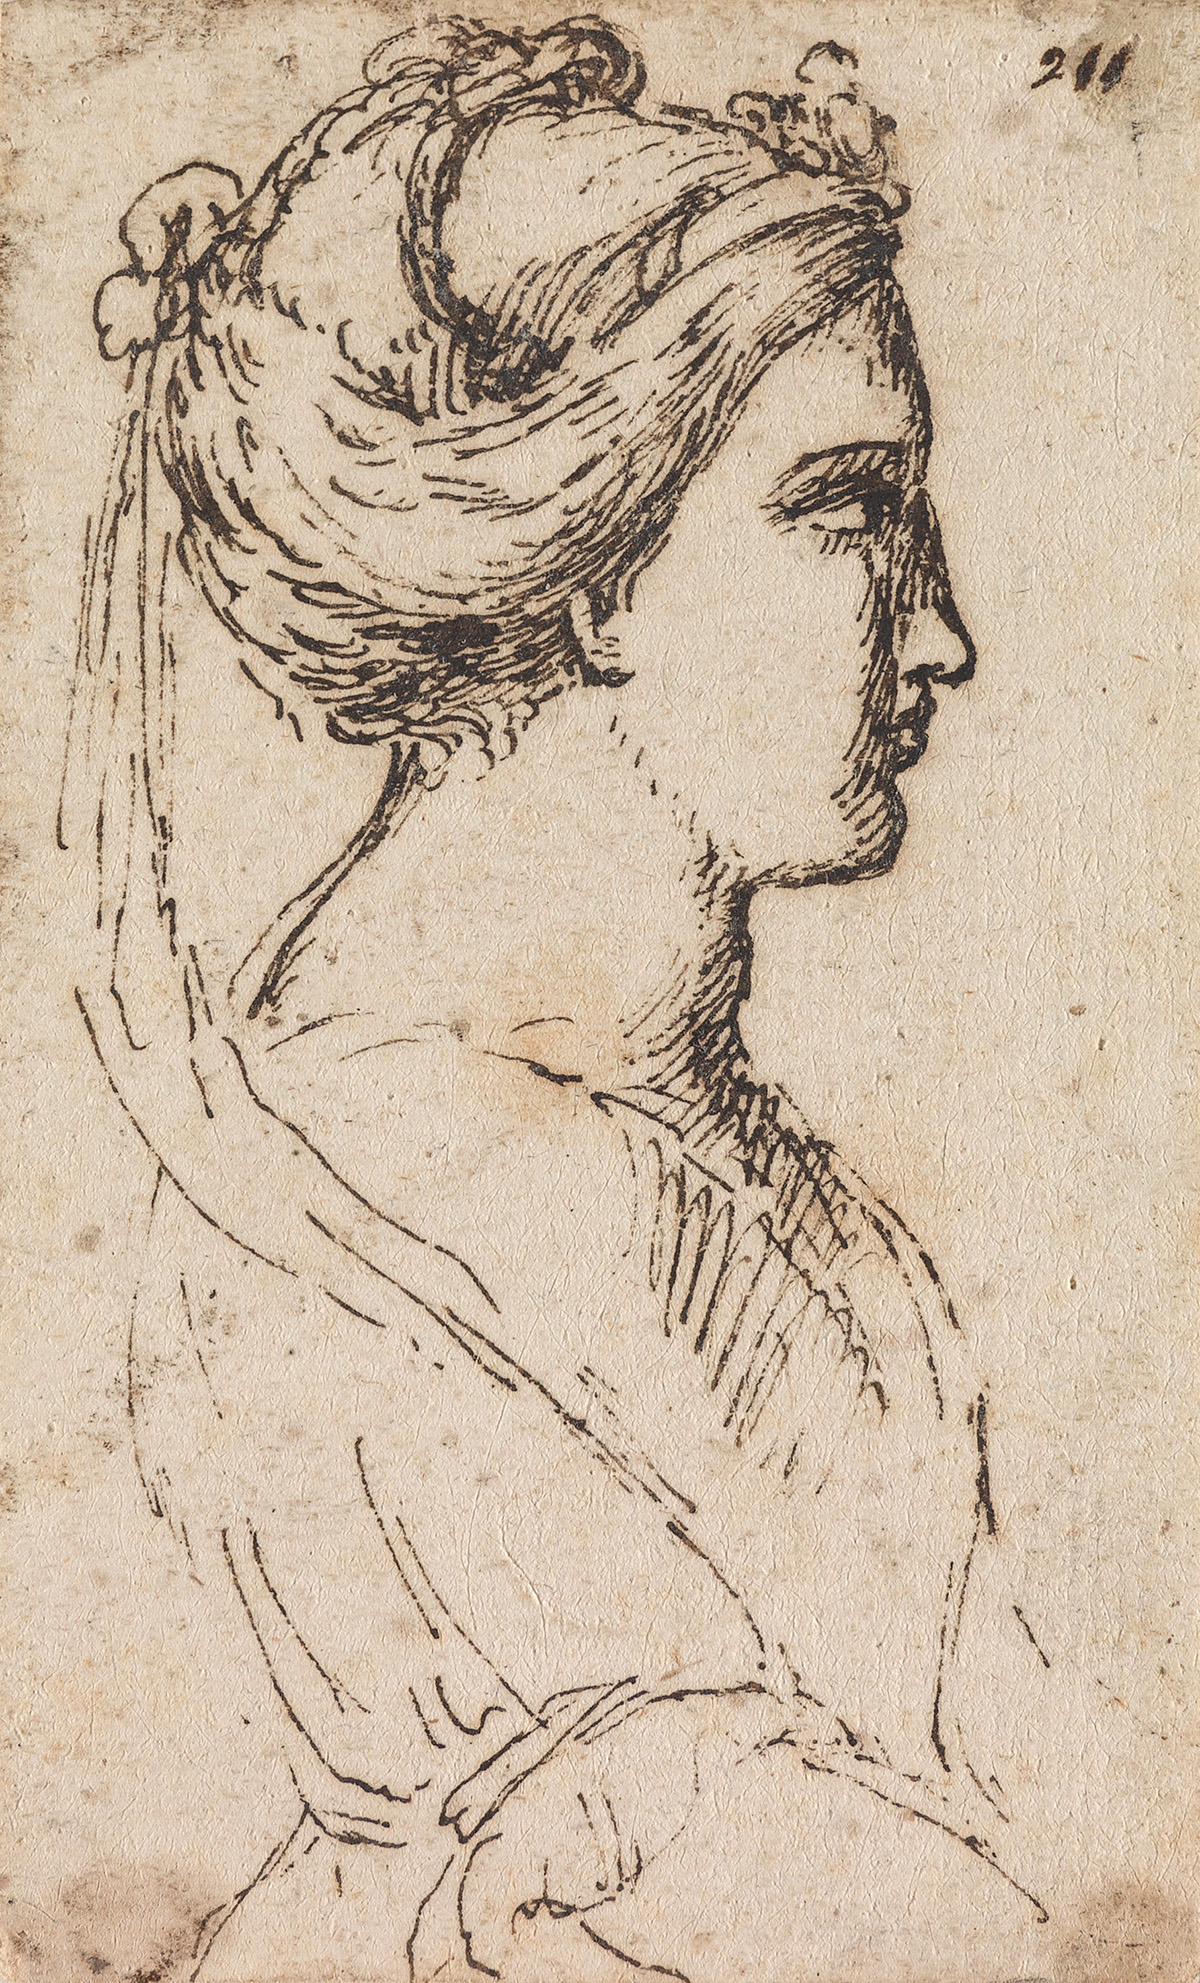 AGOSTINO CARRACCI (CIRCLE OF) (Bologna 1557-1602 Parma) A Woman in Profile.